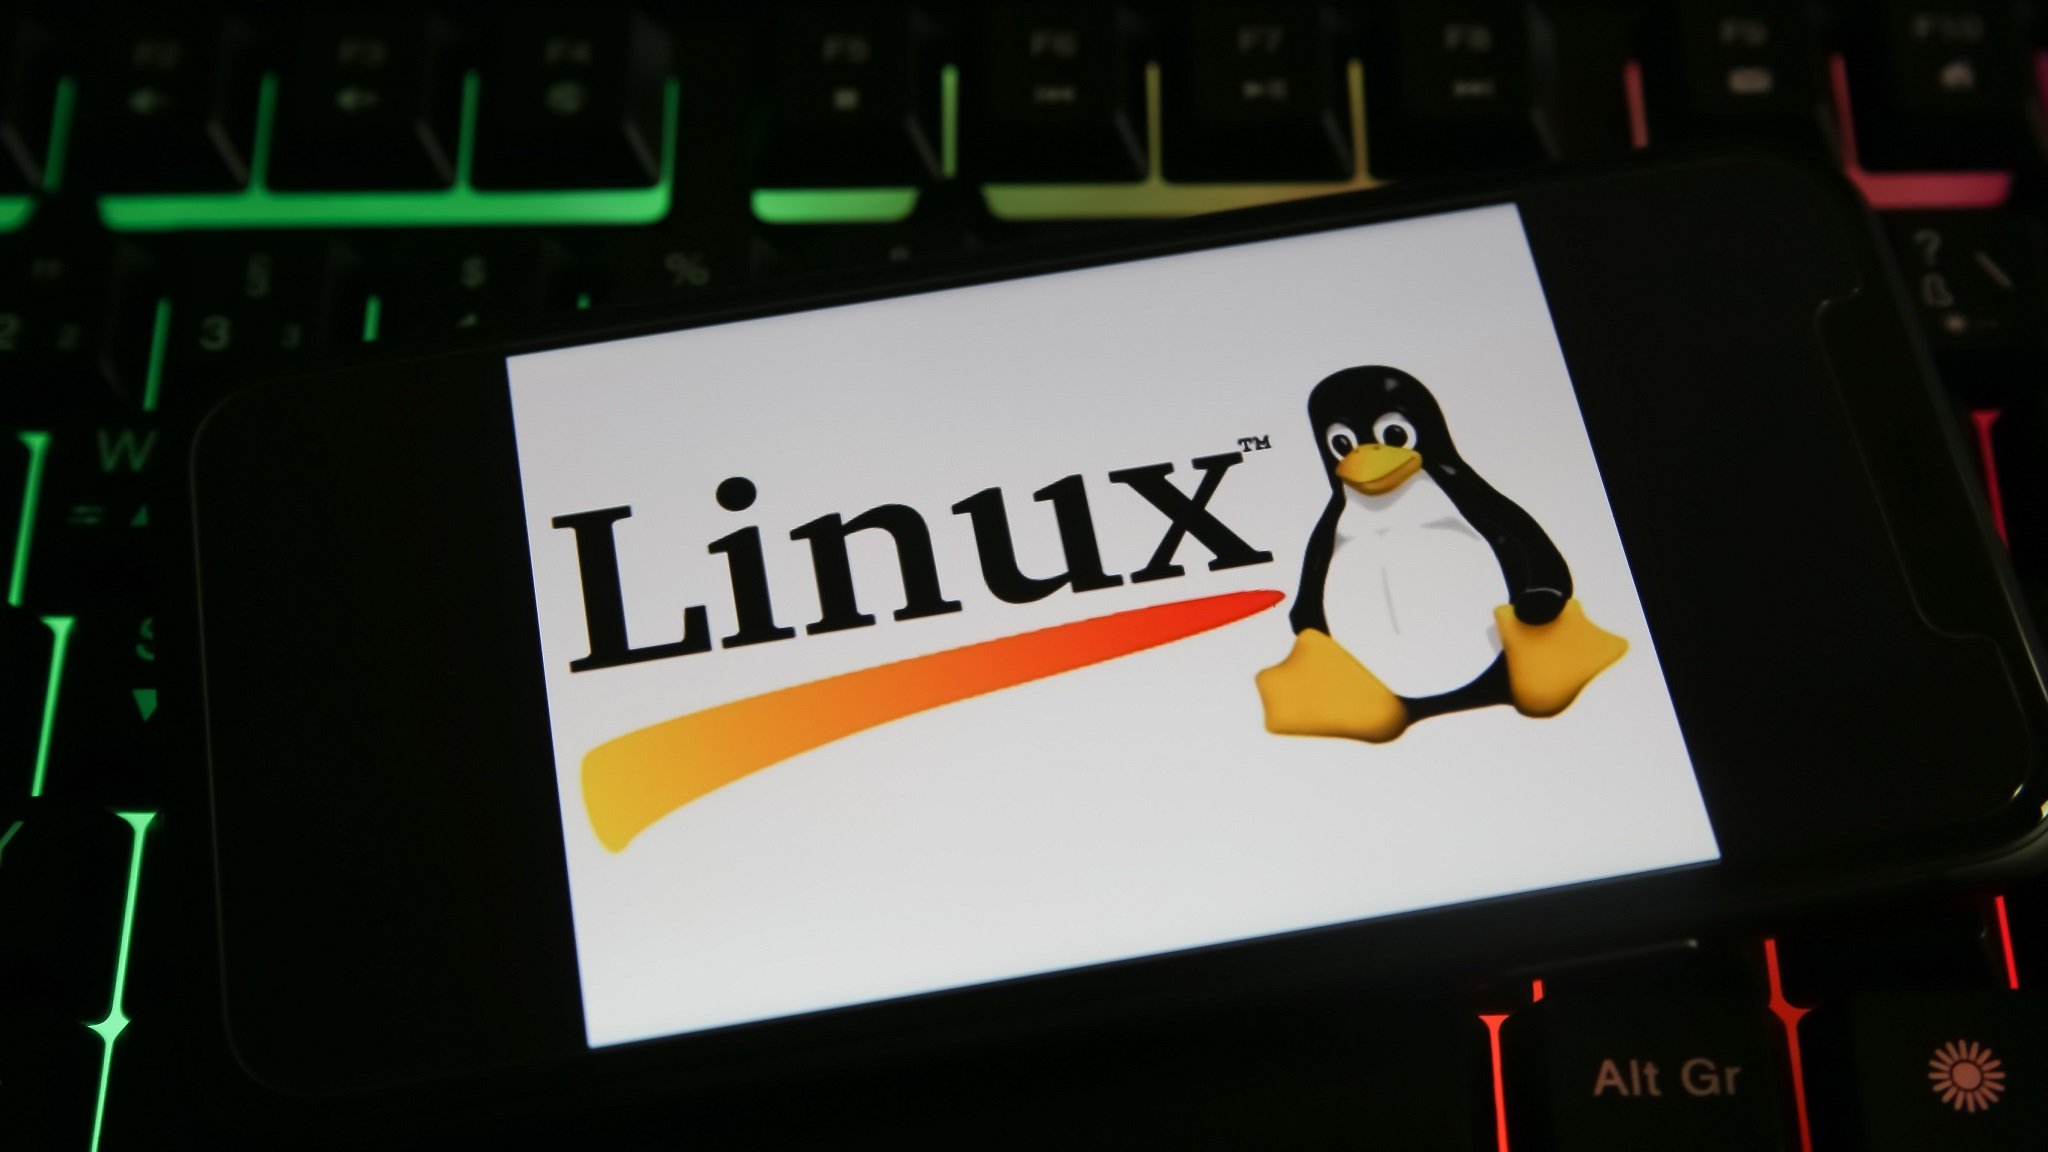 Der Linux-Pinguin auf einer Tastatur